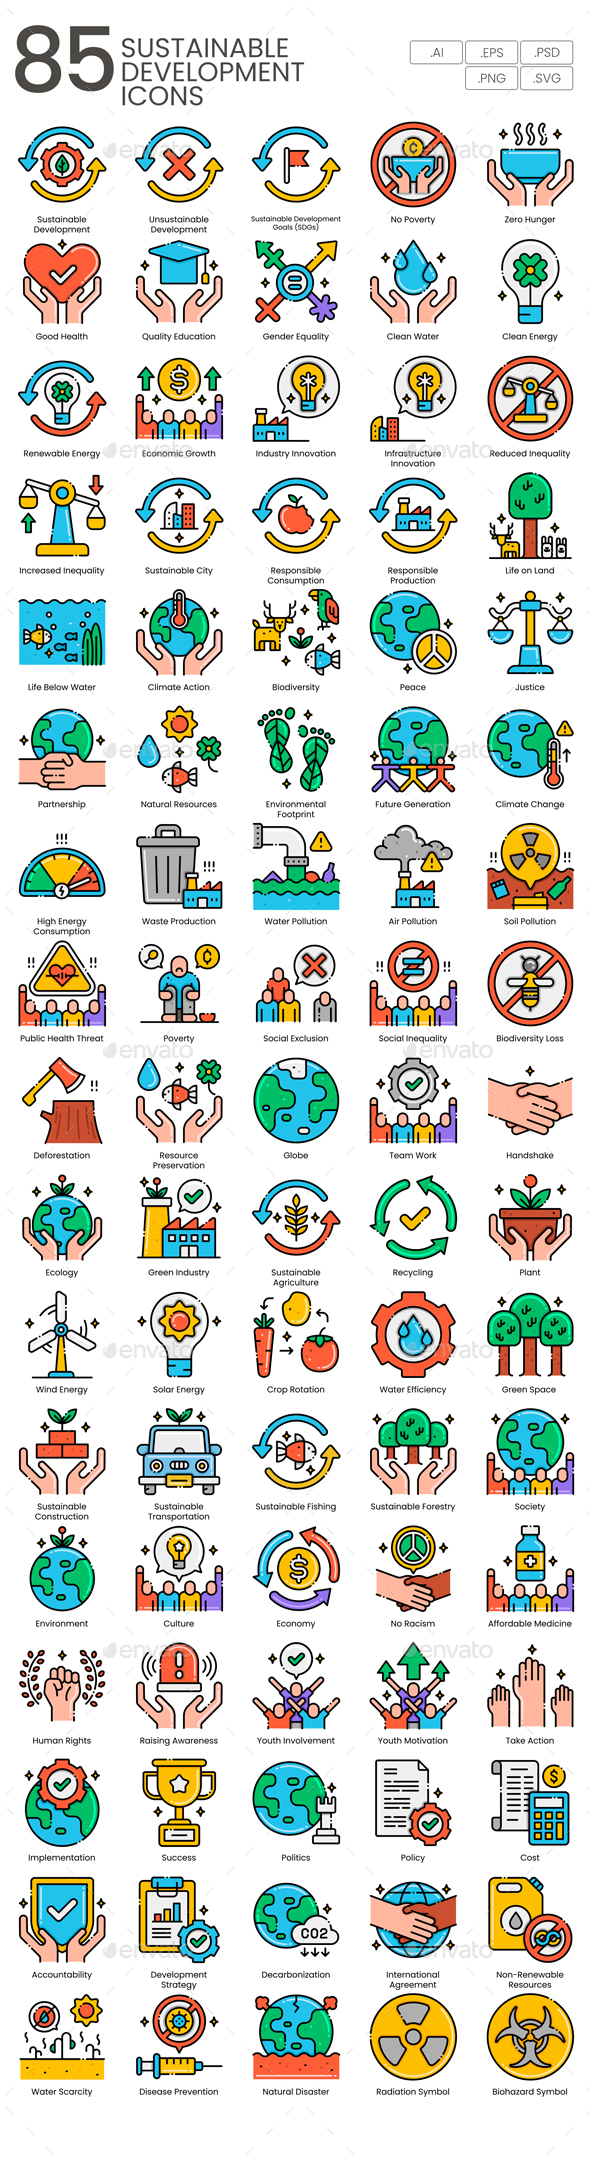 85 Sustainable Development Icons | Aesthetics Series